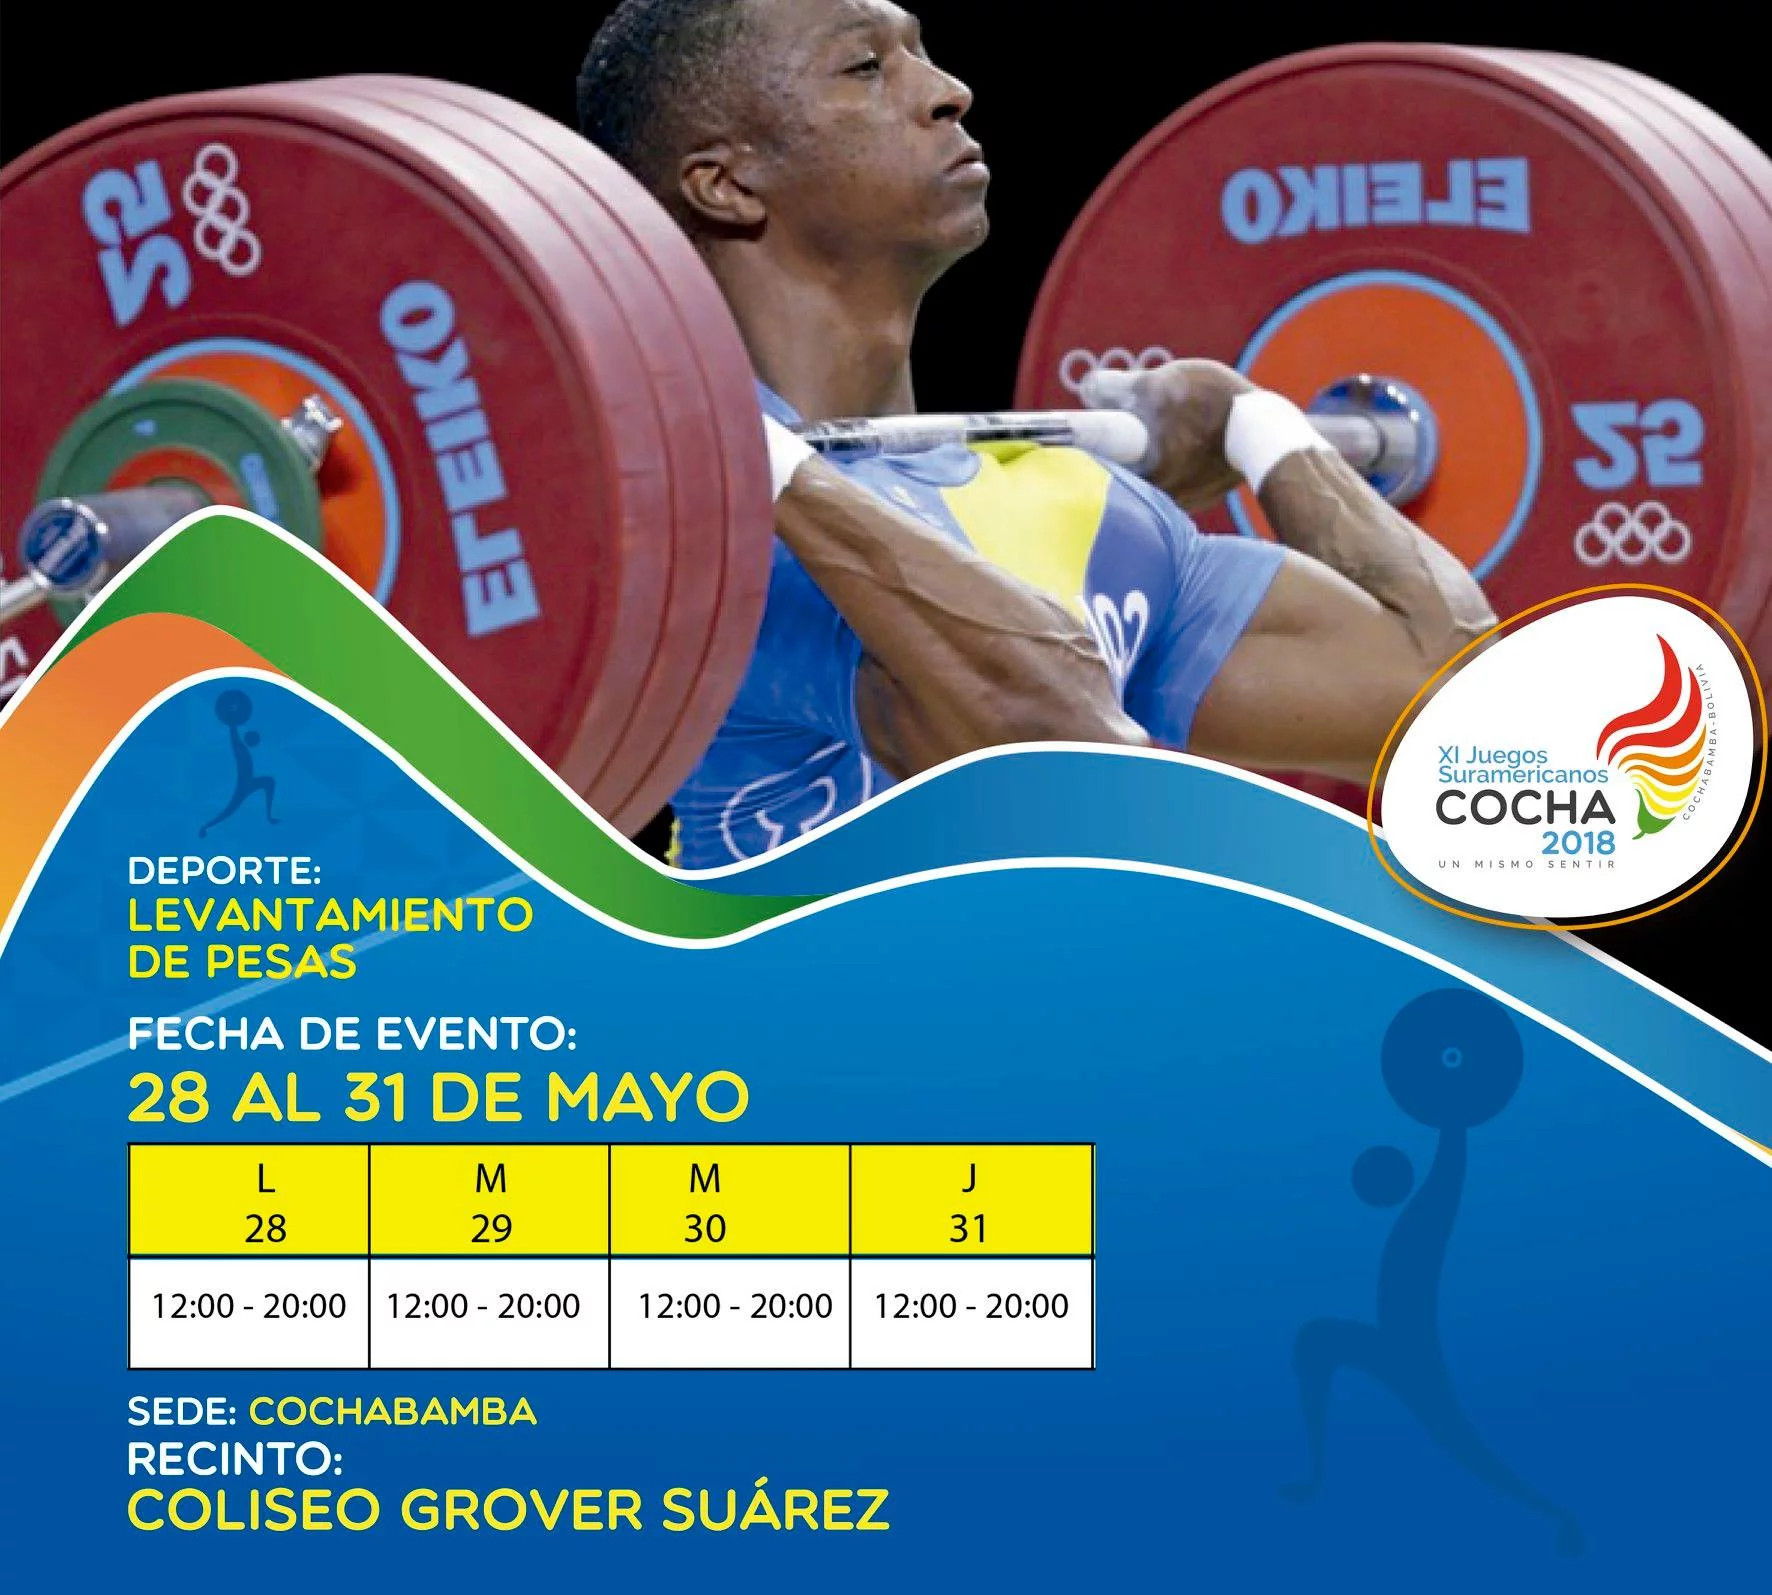 Resultados XI Juegos Suramericanos Cochabamba 2018 – Del 26 de mayo al 08 de Junio